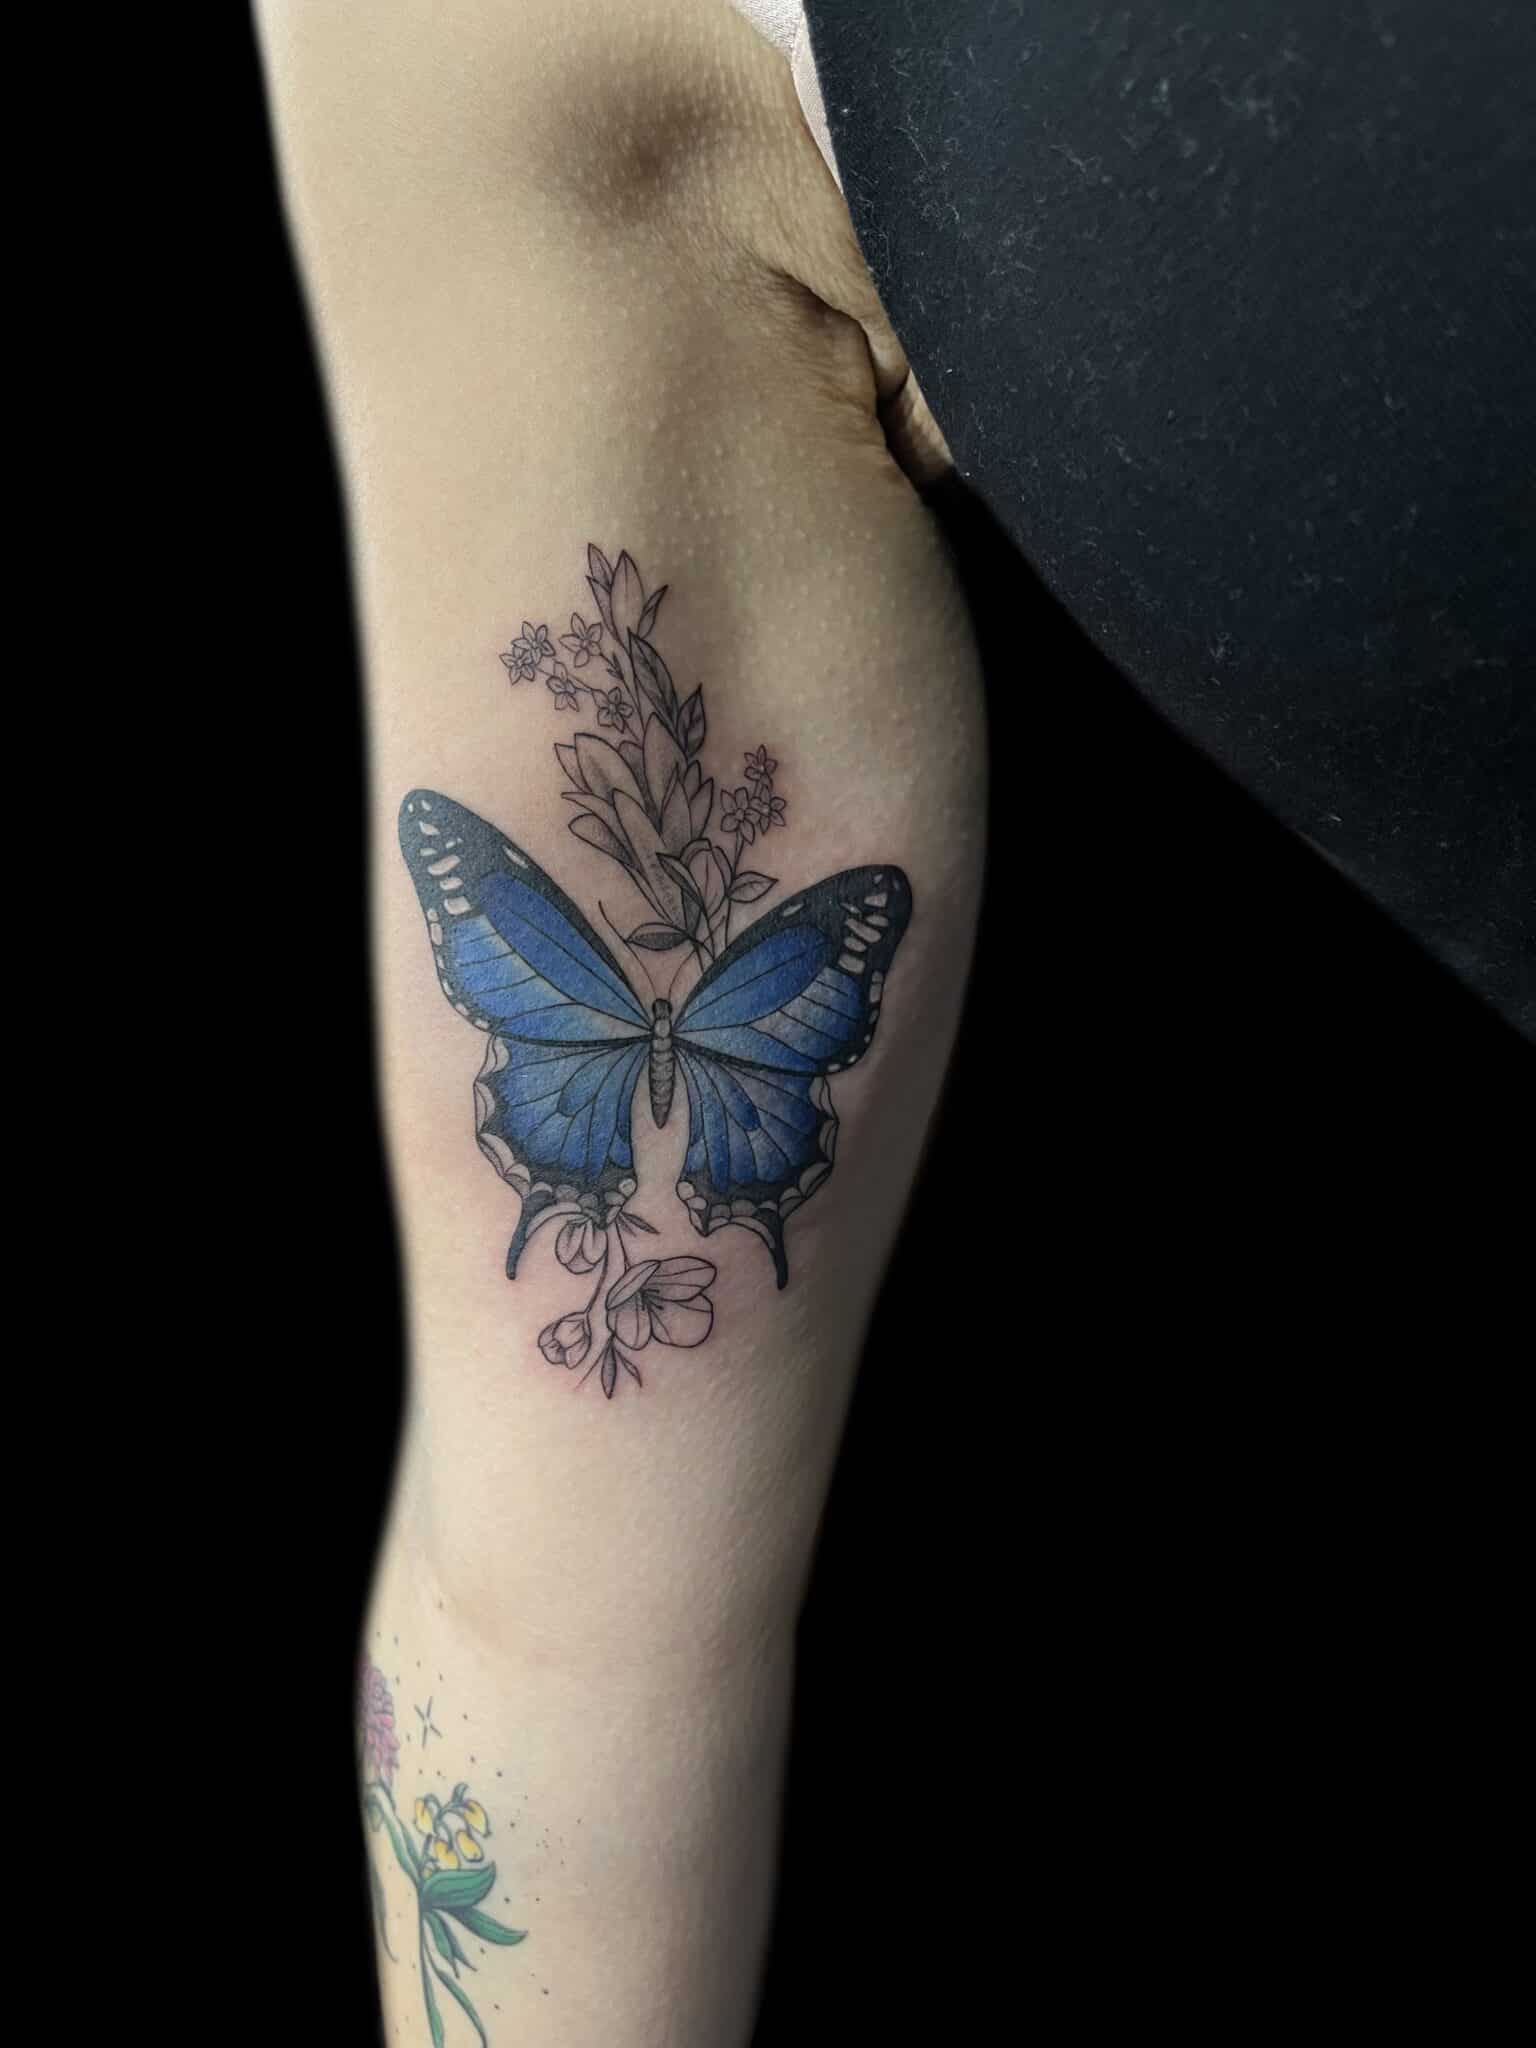 Demi DiMartino | Tattoo Artist at Revolt Tattoos in Las Vegas, Nevada.